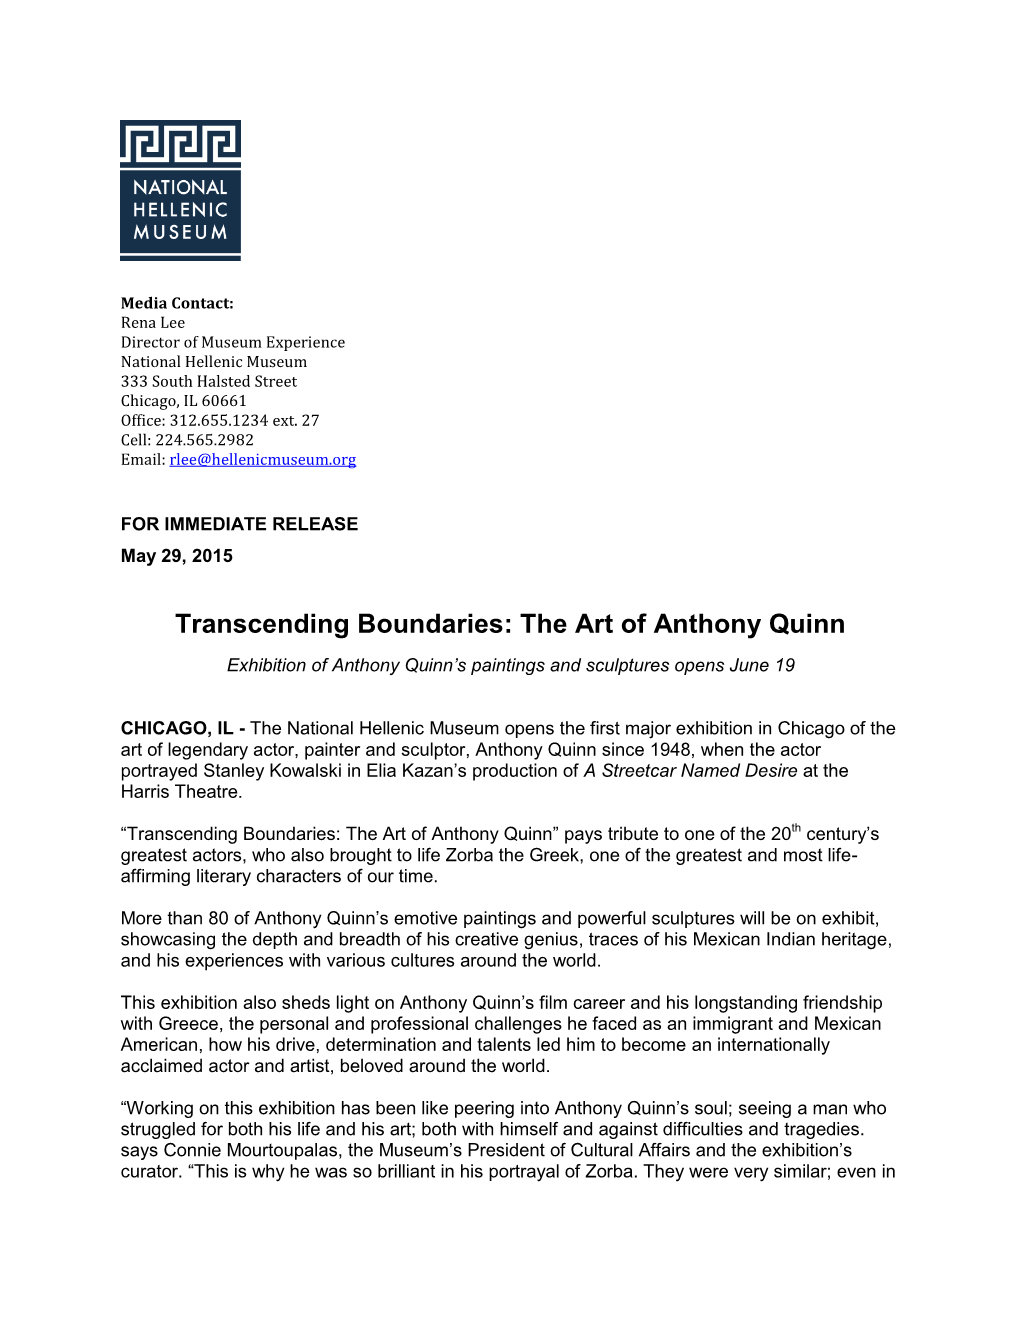 Transcending Boundaries: the Art of Anthony Quinn